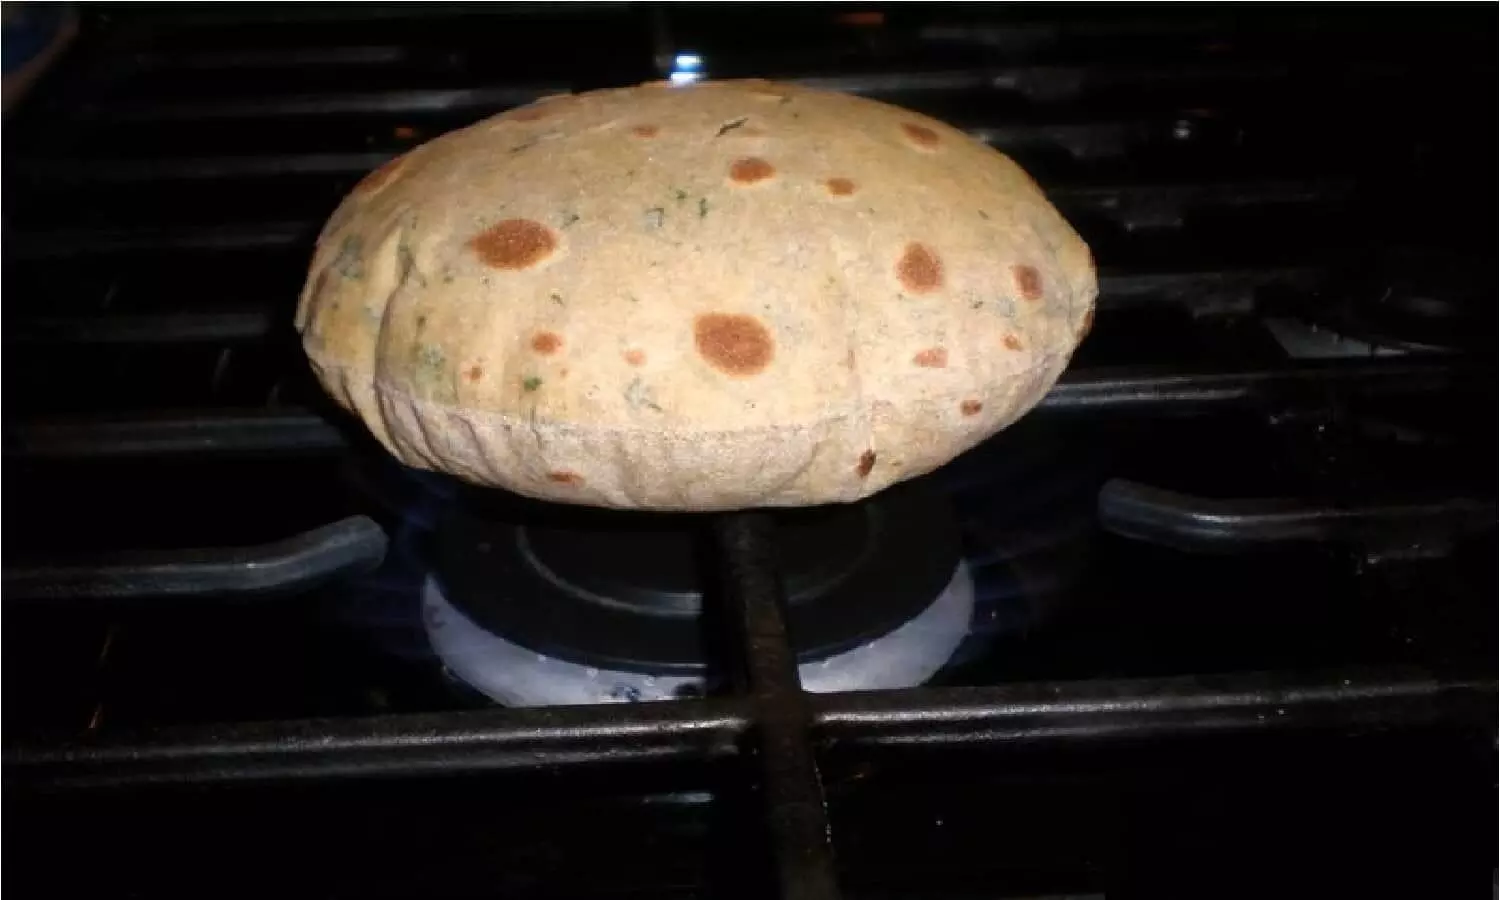 Astro Tips For Cooking: अगर आप भी बनाते है गिन कर रोटी तो घर का सबकुछ हो जाएगा बर्बाद, छा जाएगी दरिद्रता